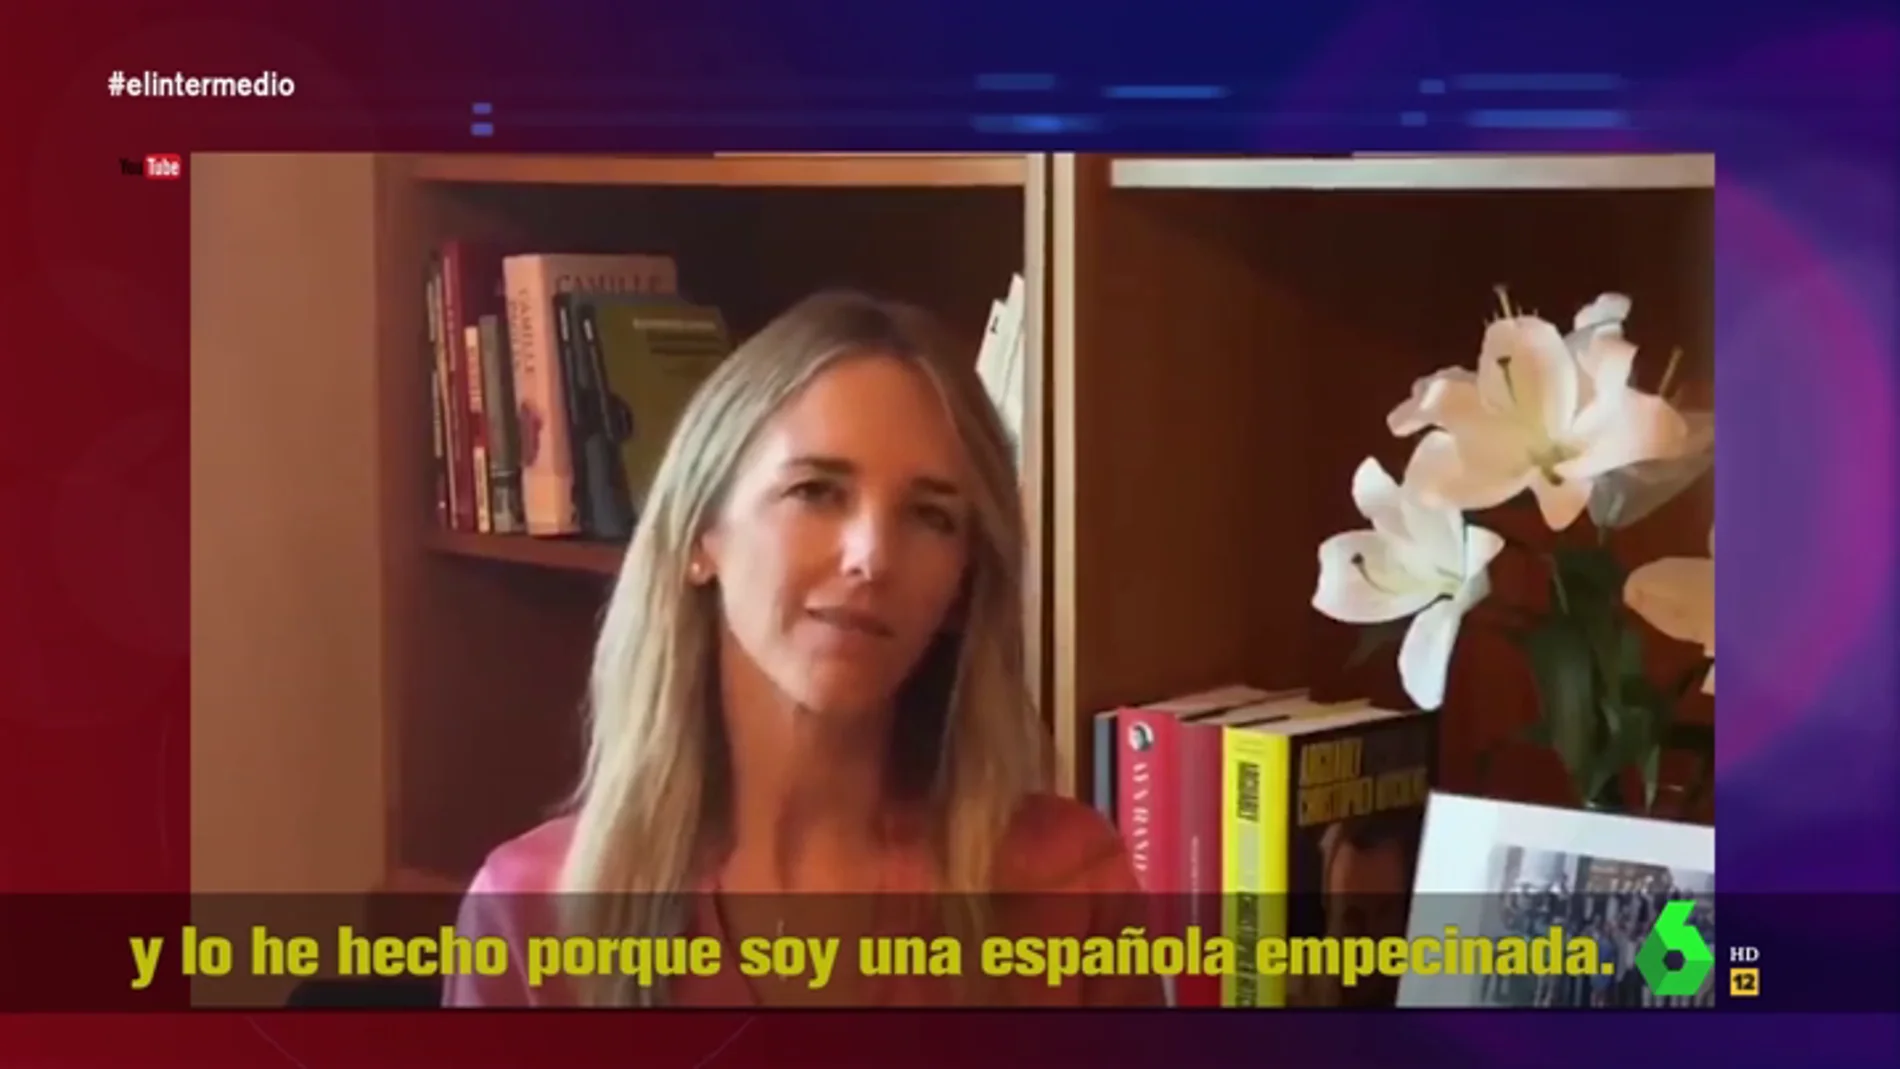 "Soy una española empecinada": así arranca Cayetana Álvarez de Toledo su vídeo de Youtube contra el PP